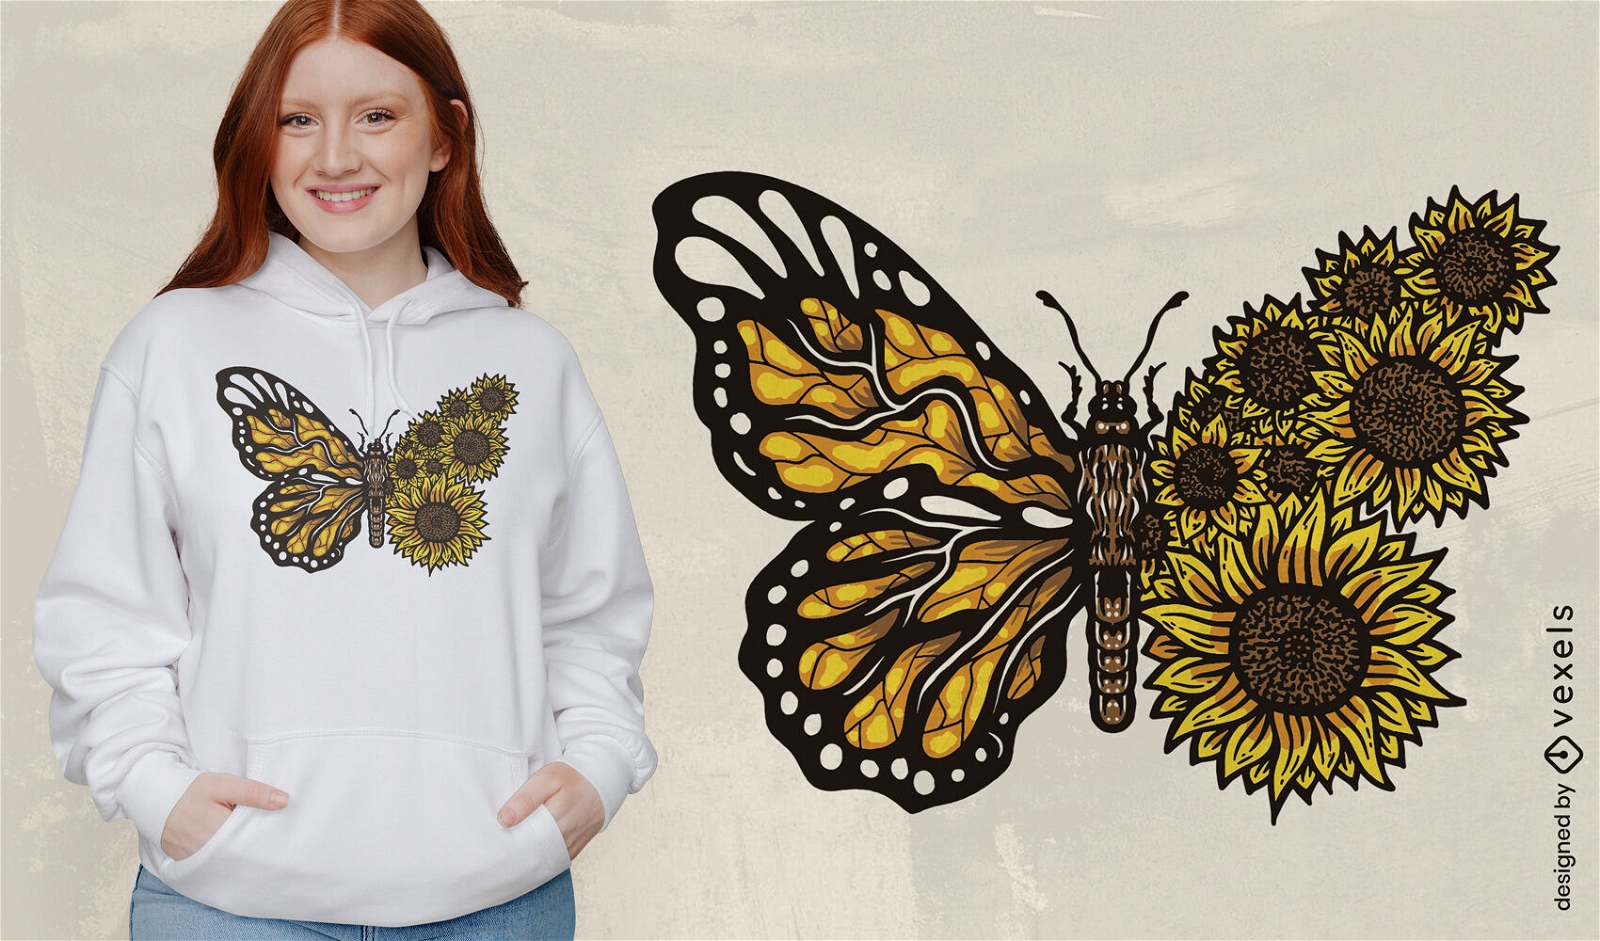 Sunflower butterfly t-shirt design